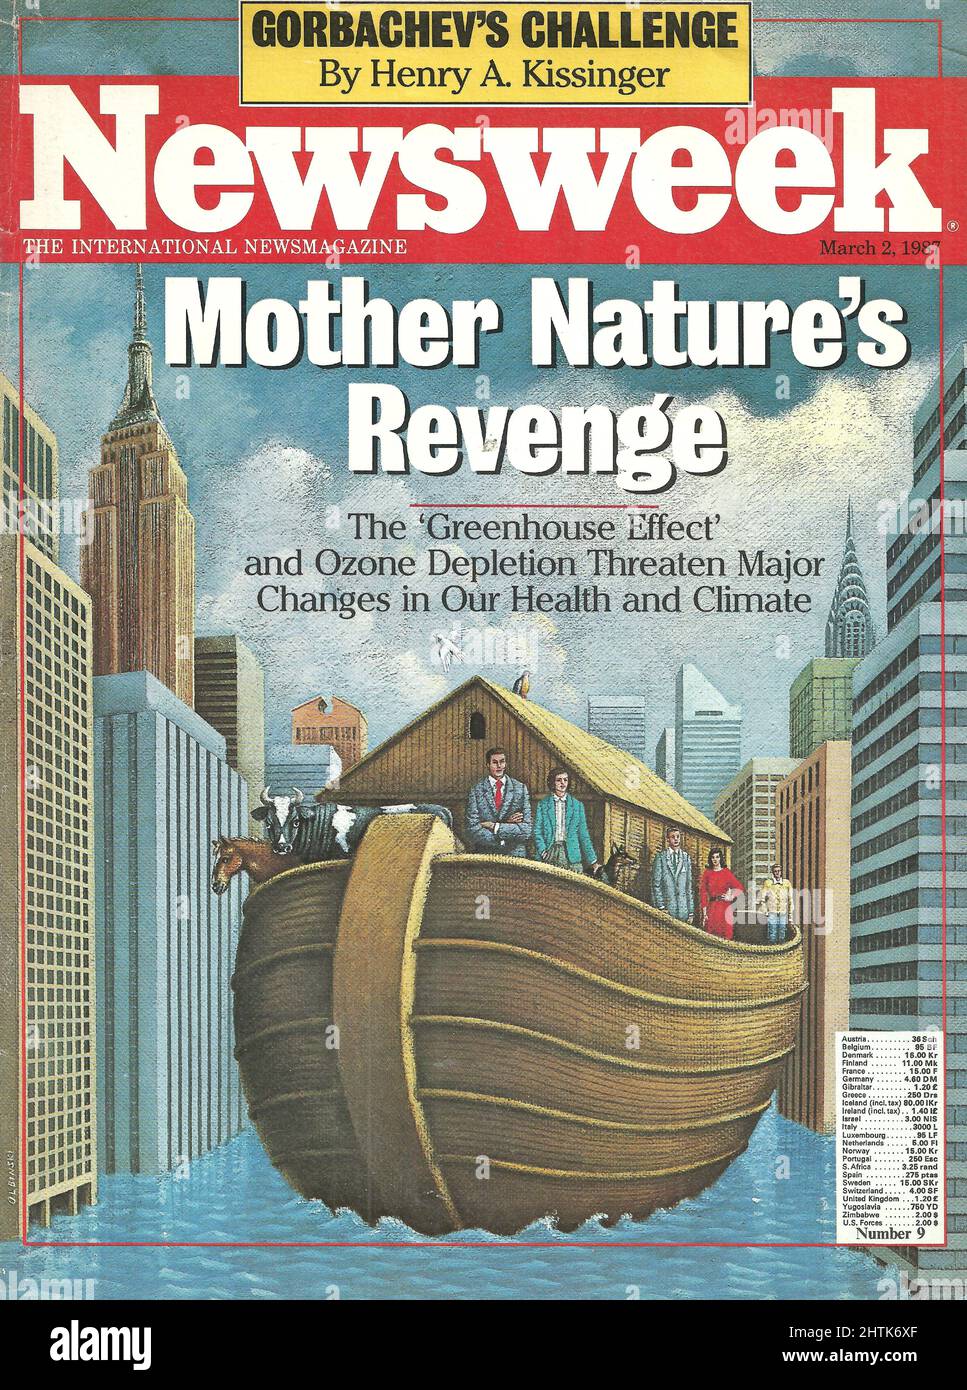 Copertina della Newsweek 2 marzo 1987, la vendetta della natura della Madre, l'effetto serra, copertina di Rafal Olbinski Foto Stock